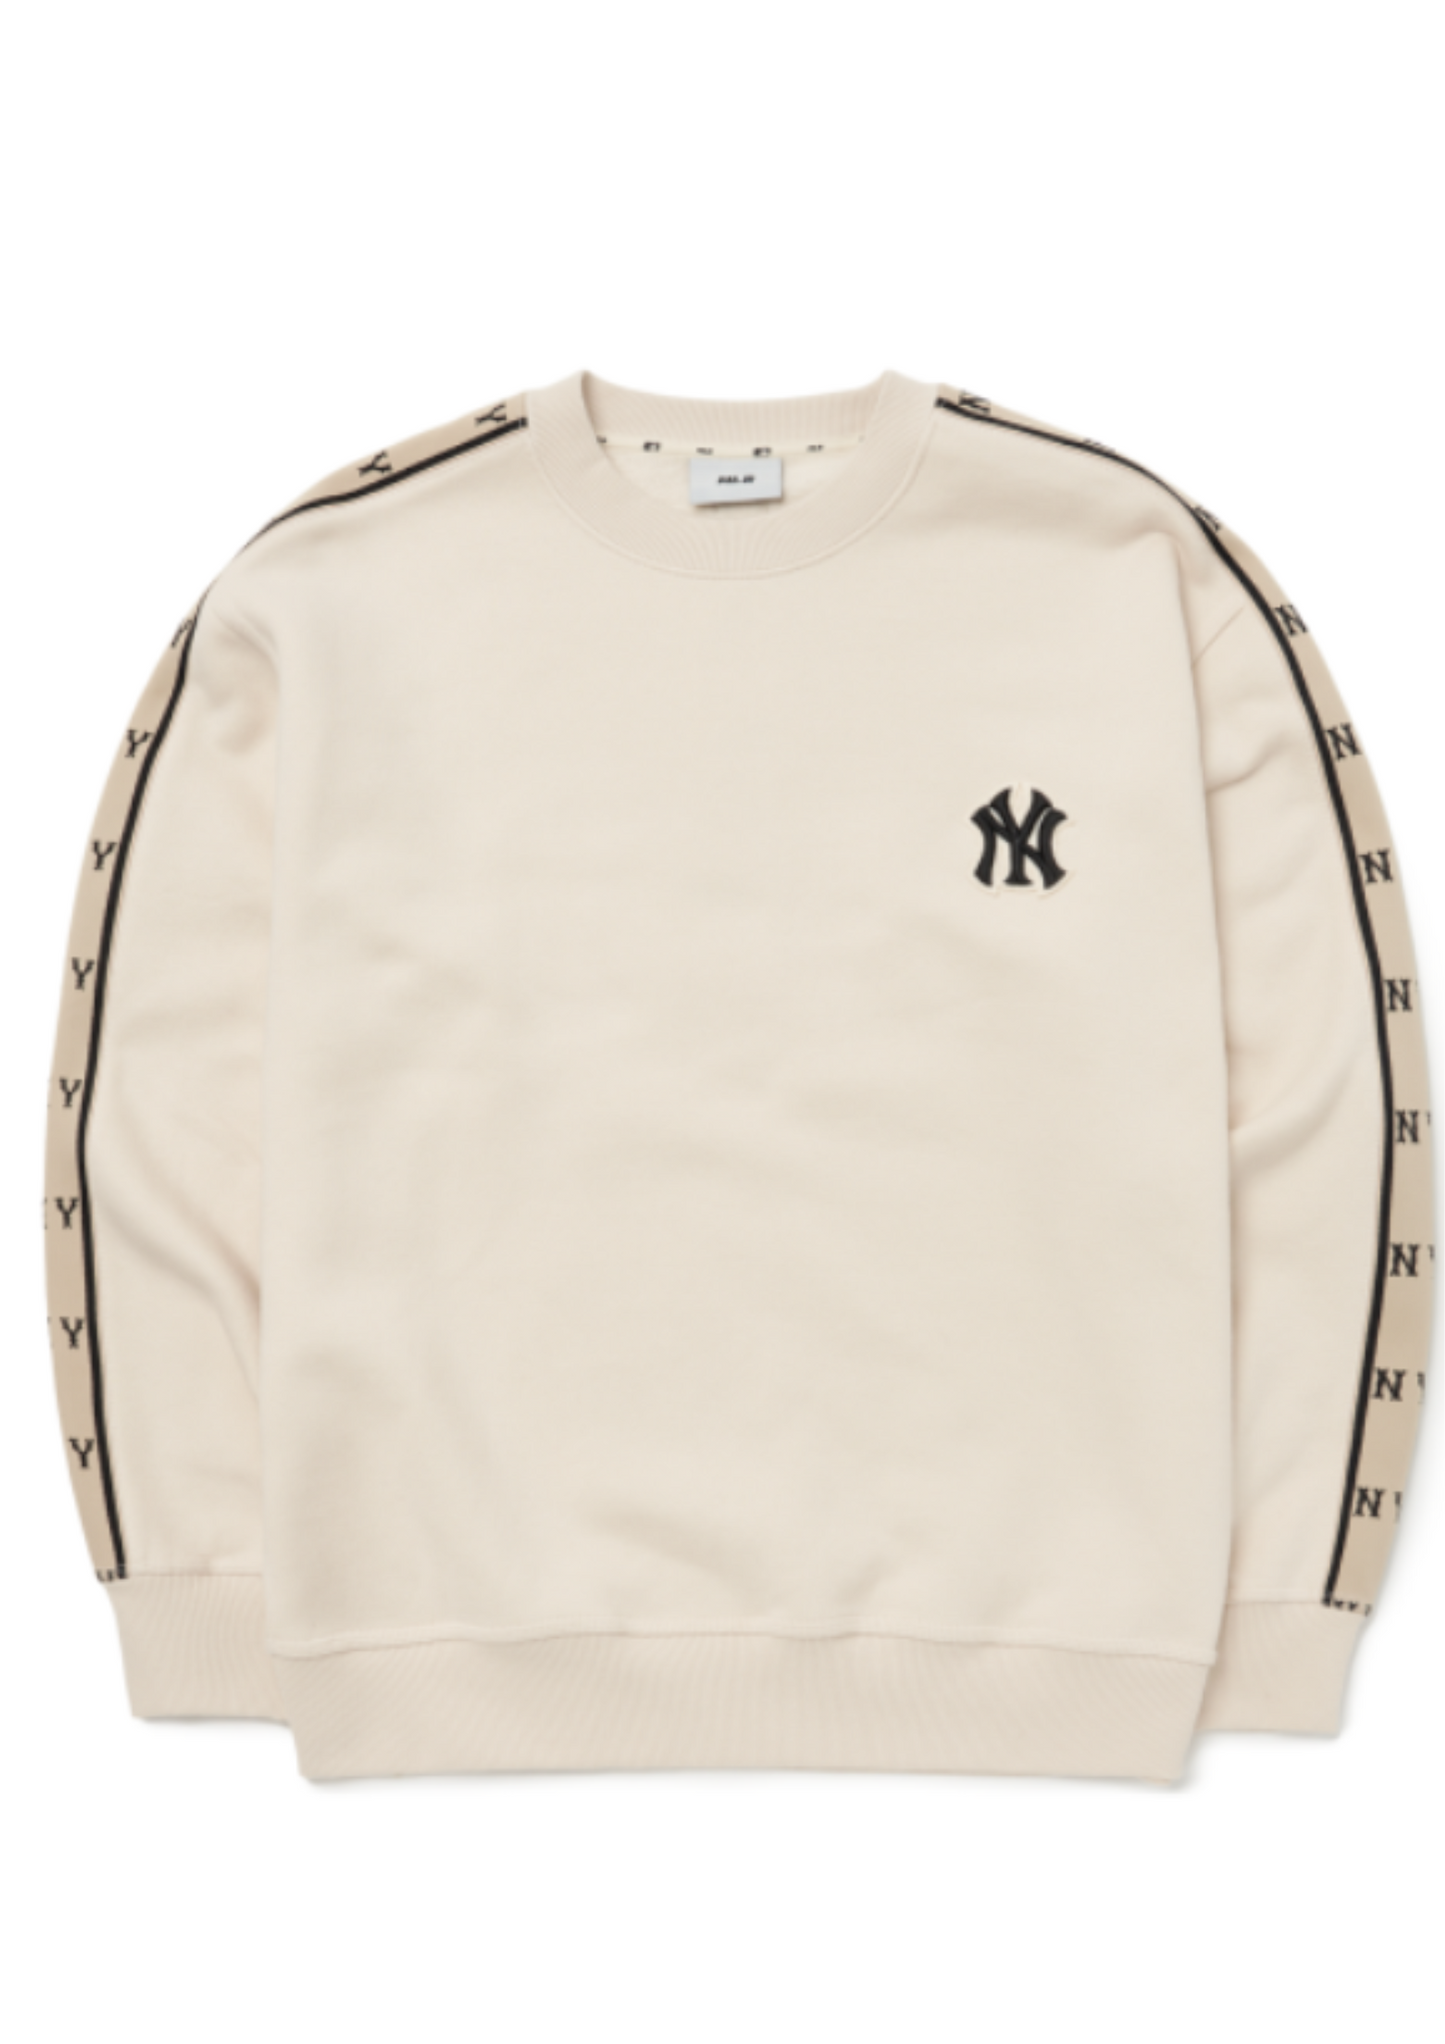 MLB New Era New York Yankees Monogram Tape Sweatshirts (Cream)